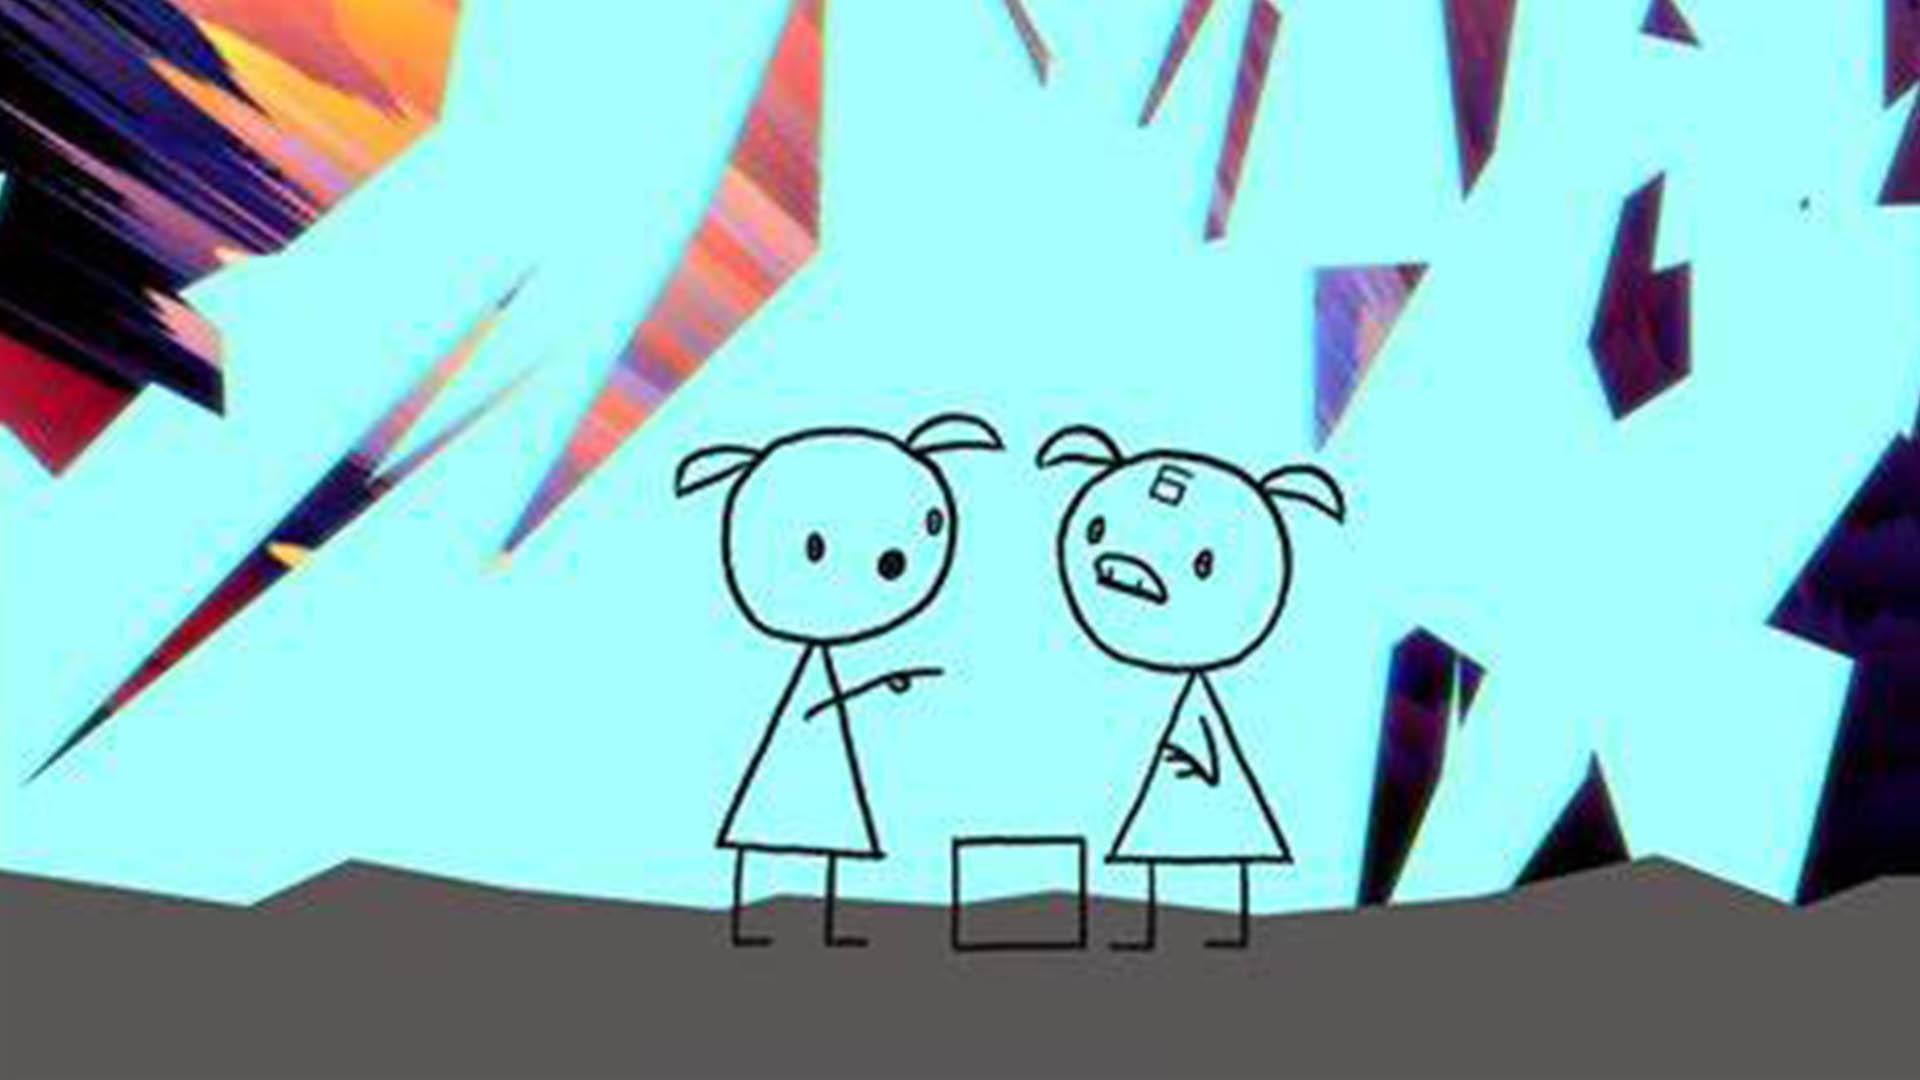 دختری نقاشی شده در انیمیشن World of Tomorrow به همراه دوستش